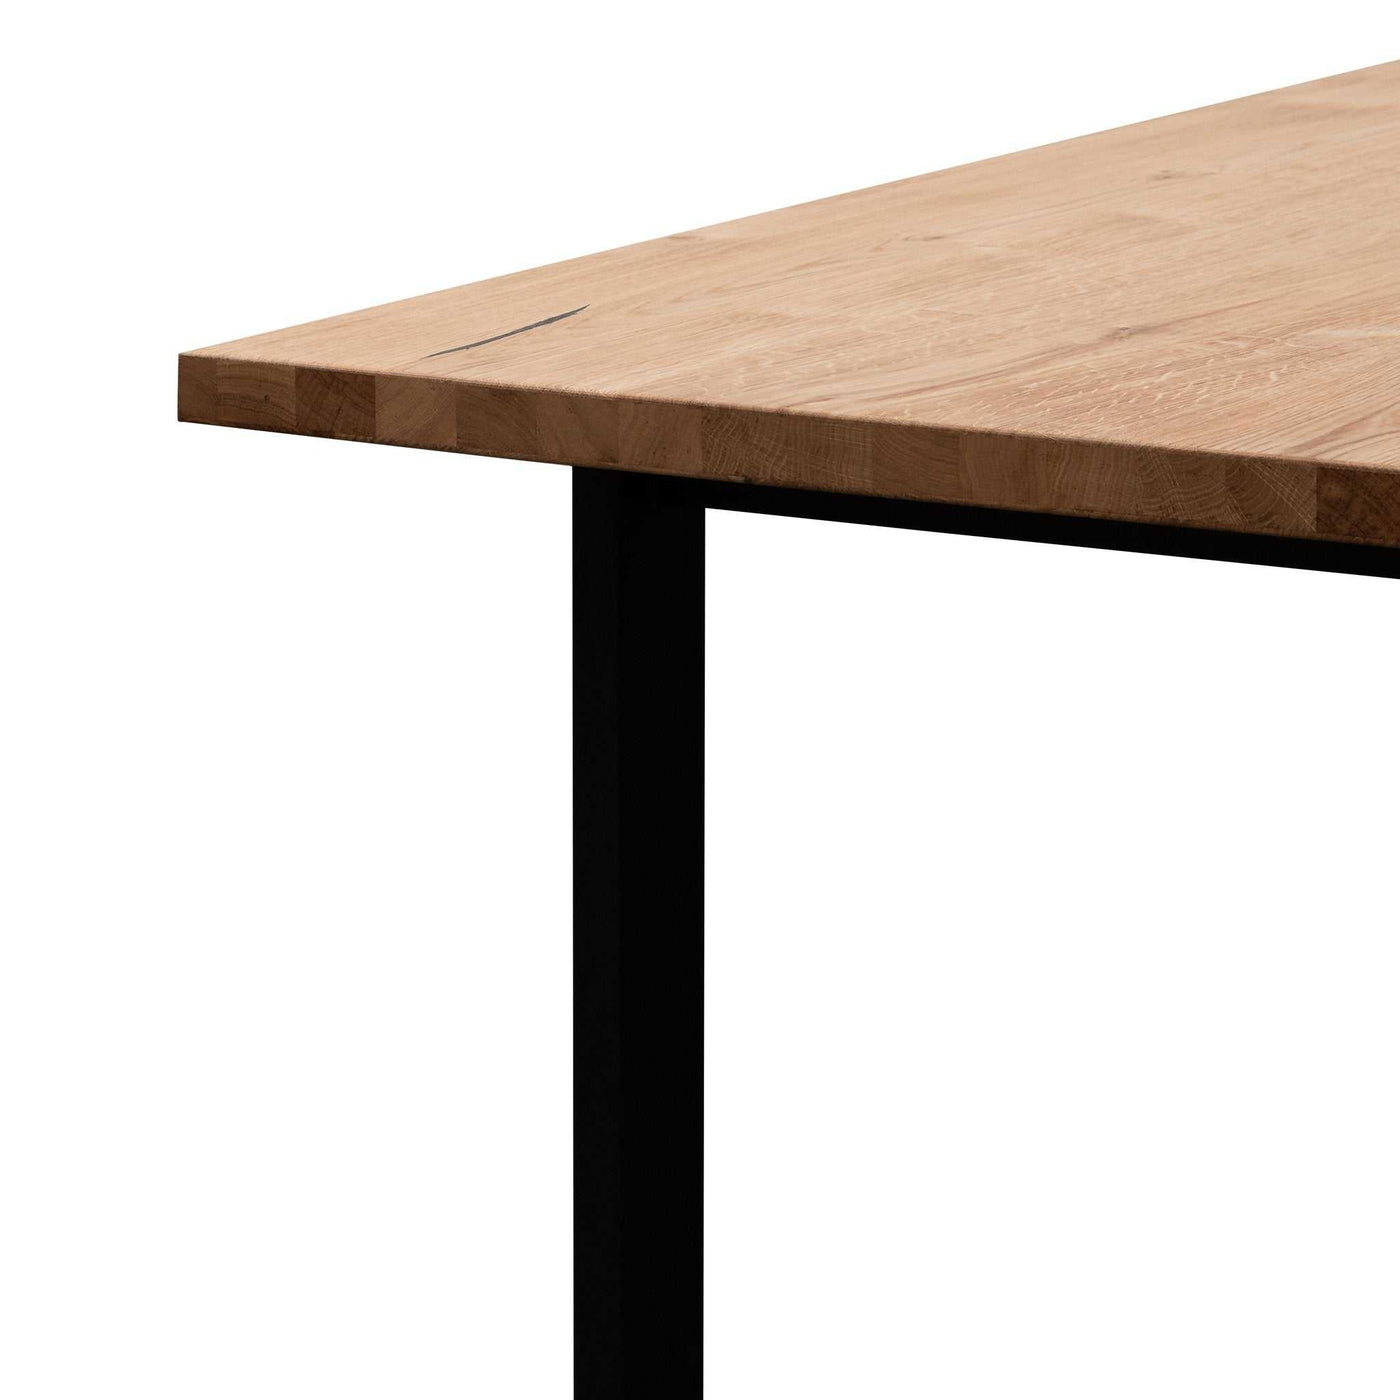 2.2m Straight Top Dining Table - Rustic Oak Veneer - Metal Legs